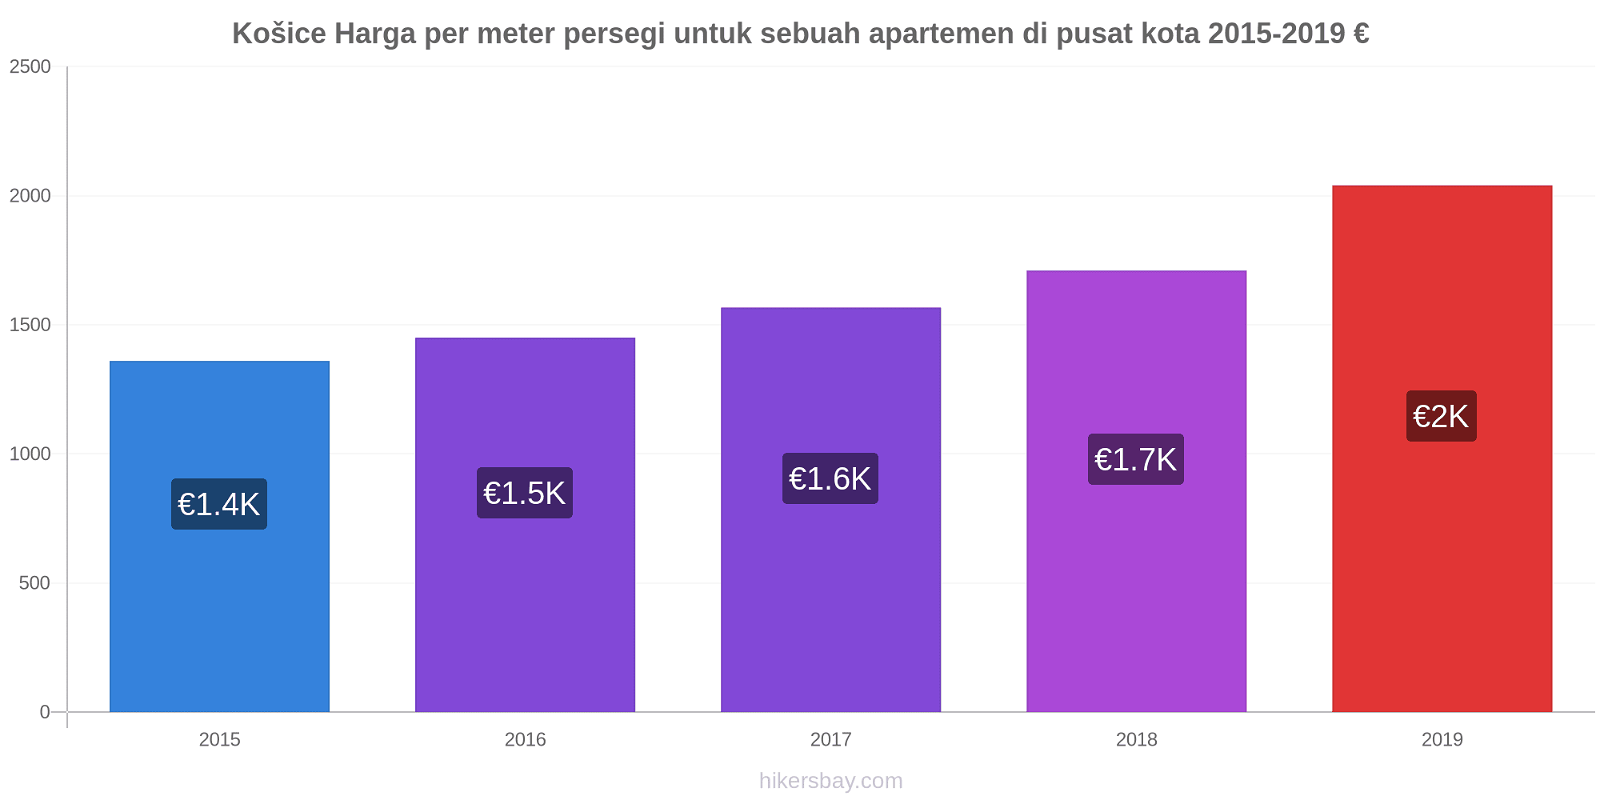 Košice perubahan harga Harga per meter persegi untuk sebuah apartemen di pusat kota hikersbay.com